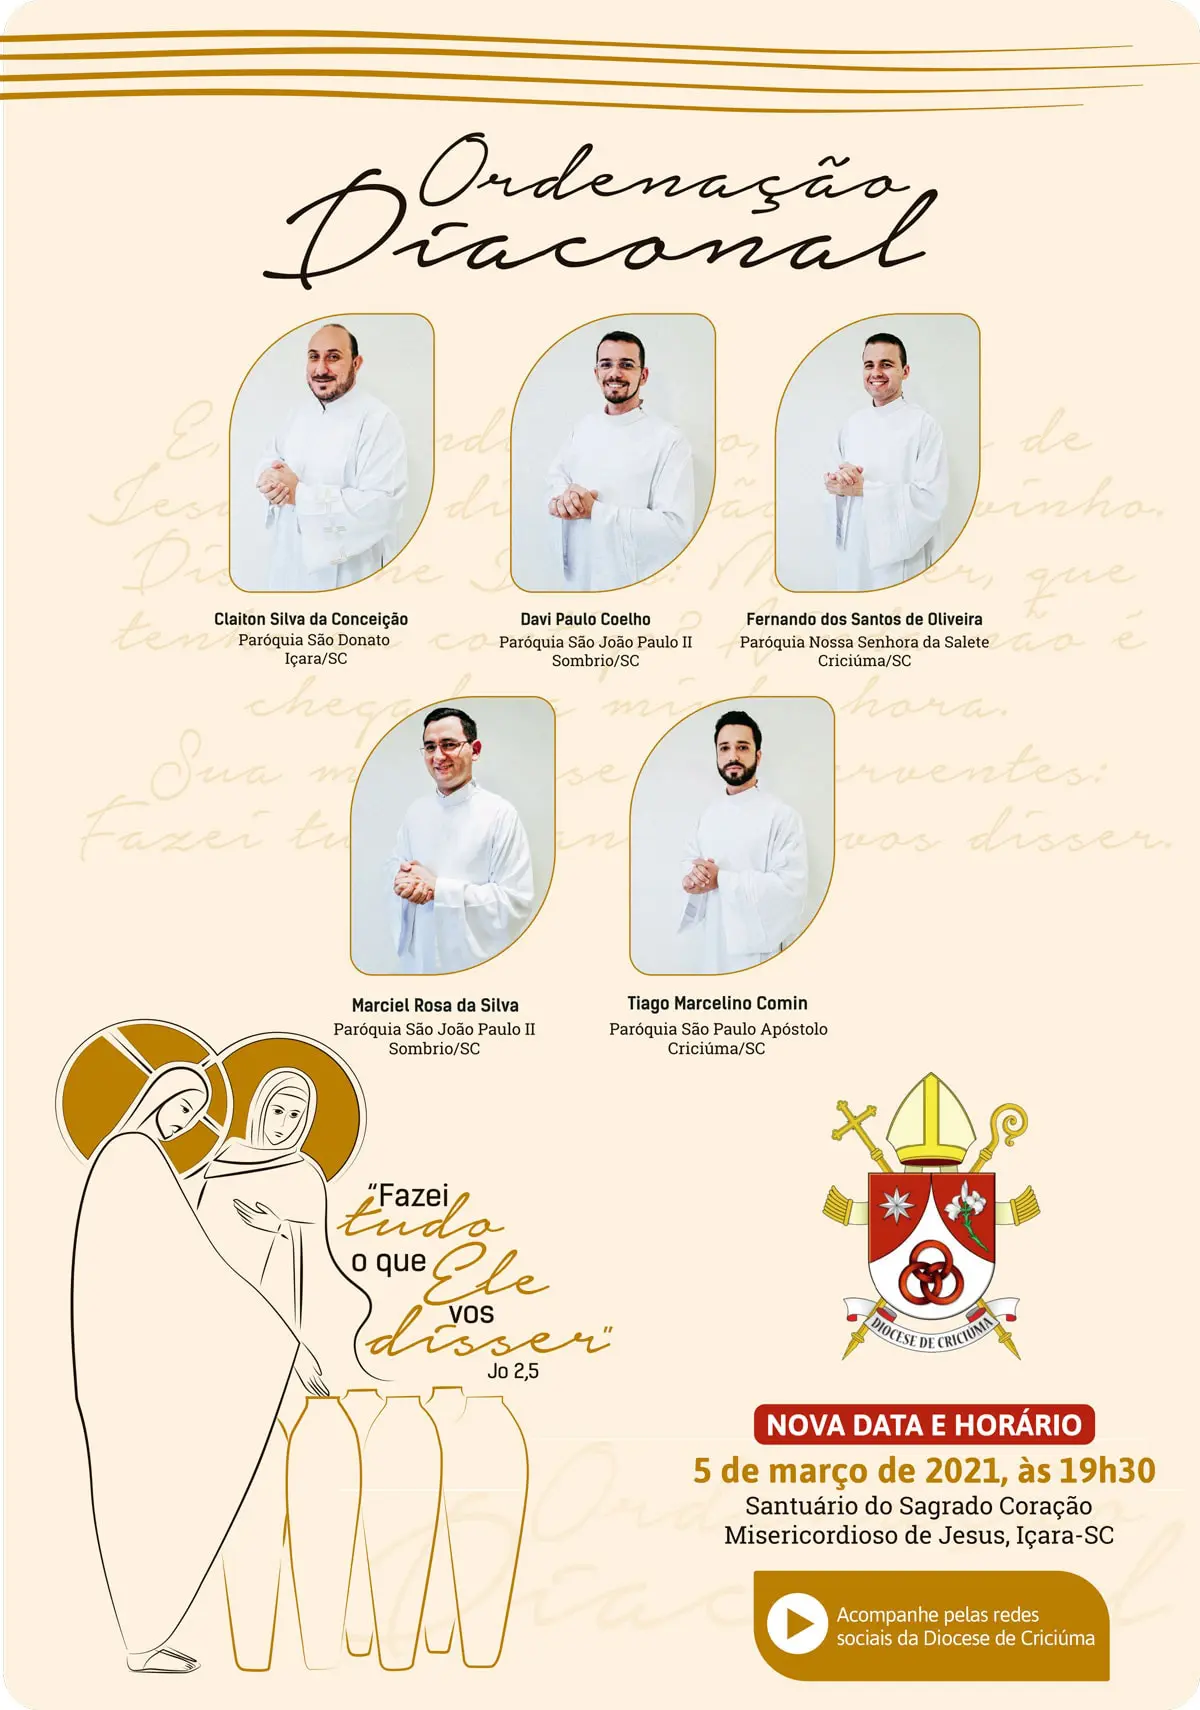 Cinco novos diáconos serão ordenados na Diocese de Criciúma